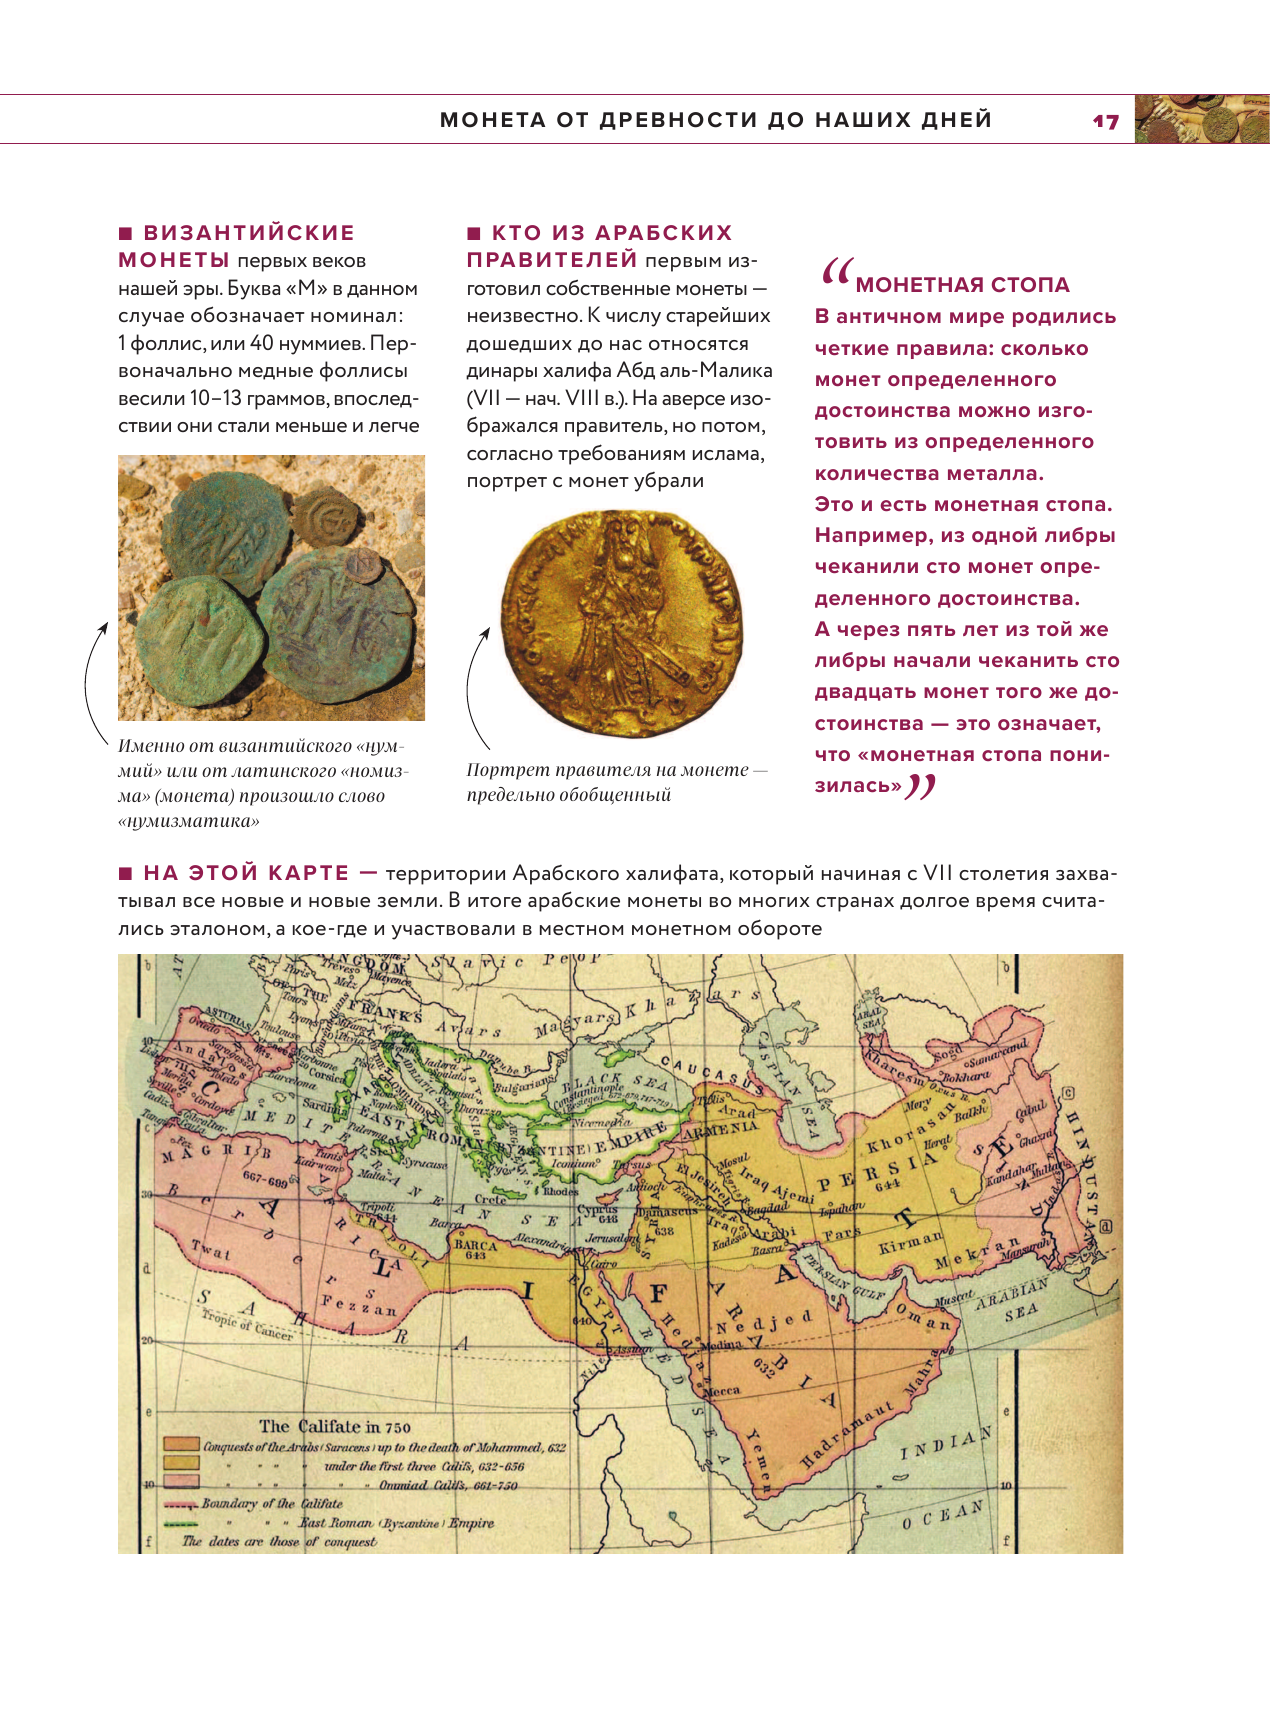 Монеты мира. Визуальная история развития мировой нумизматики от древности до наших дней - фото №20